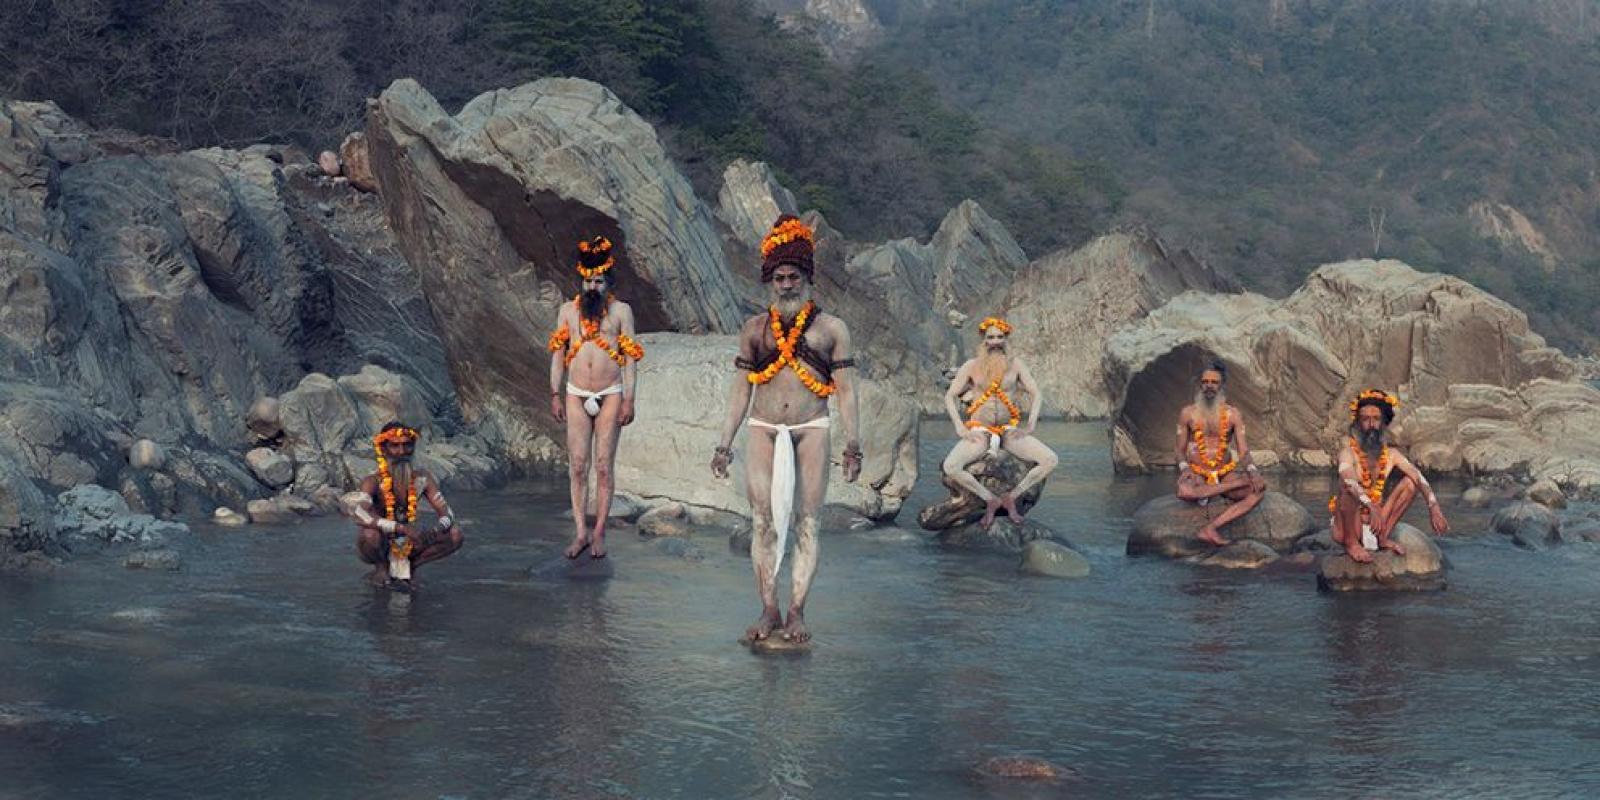 XXIV 2 Sadhus im Ganges

Sadhus (bedeutet "gute Menschen") sind fromme, religiöse Hindus, die in ganz Indien leben. Sie tragen orangefarbene Kleidung, die die Farbe des Feuers repräsentiert, in dem sie all ihre Besitztümer verbrannt haben, um